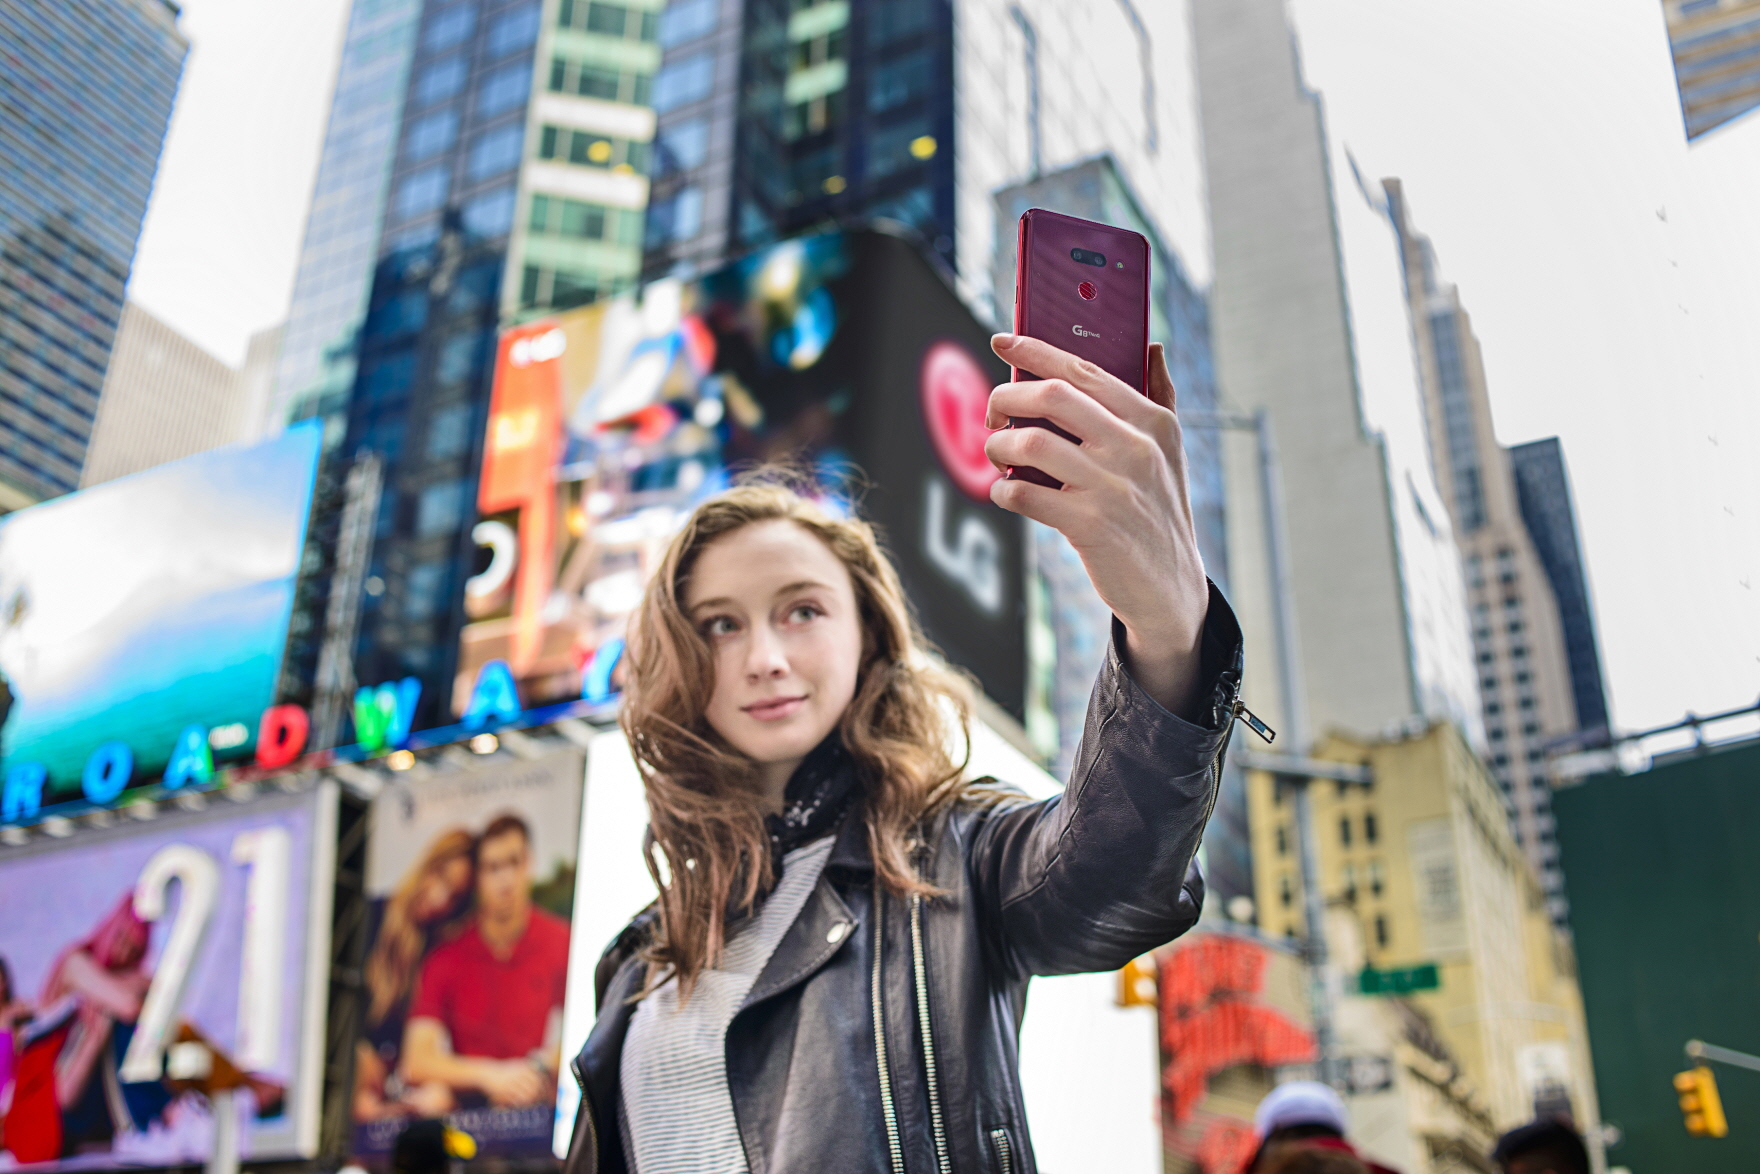 12일 모델이 미국 뉴욕 타임스퀘어에서 LG G8 ThinQ을 소개하고 있다. 버라이즌, AT&T, 스프린트, T모바일 등 주요 이동통신사는 물론 전자 제품 유통채널을 통해 언락폰으로도 출시된다.